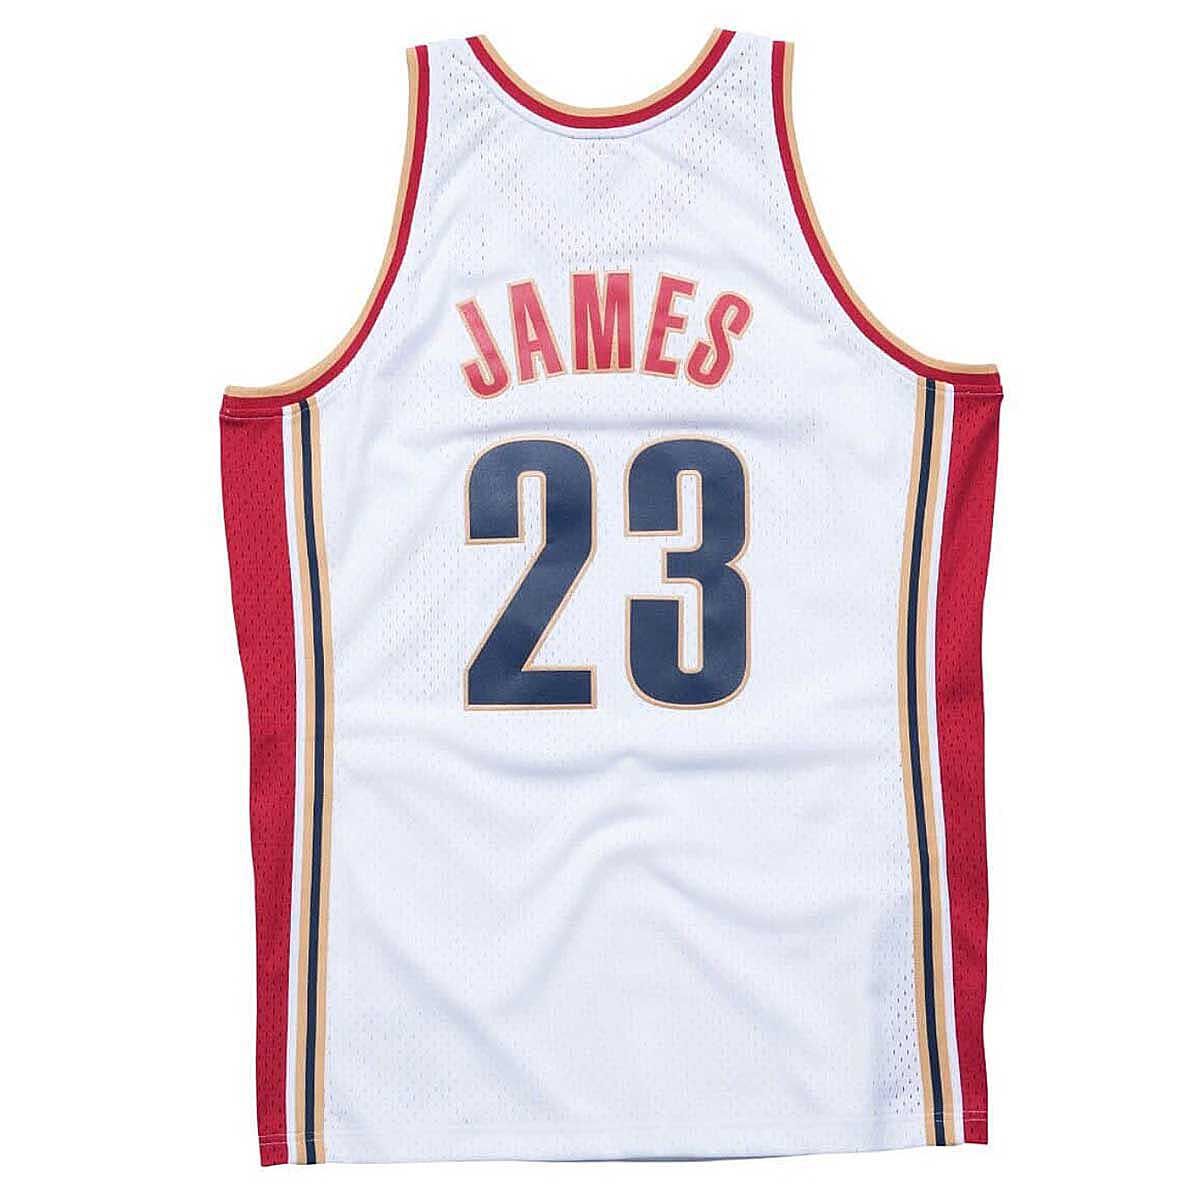 【店販用】2009 Adidas LEBRON JAMES Swingman All-Star Jersey Size (L) / レブロン ジェームズ Bought @NBA store 100% Authentic 記念ユニフォーム